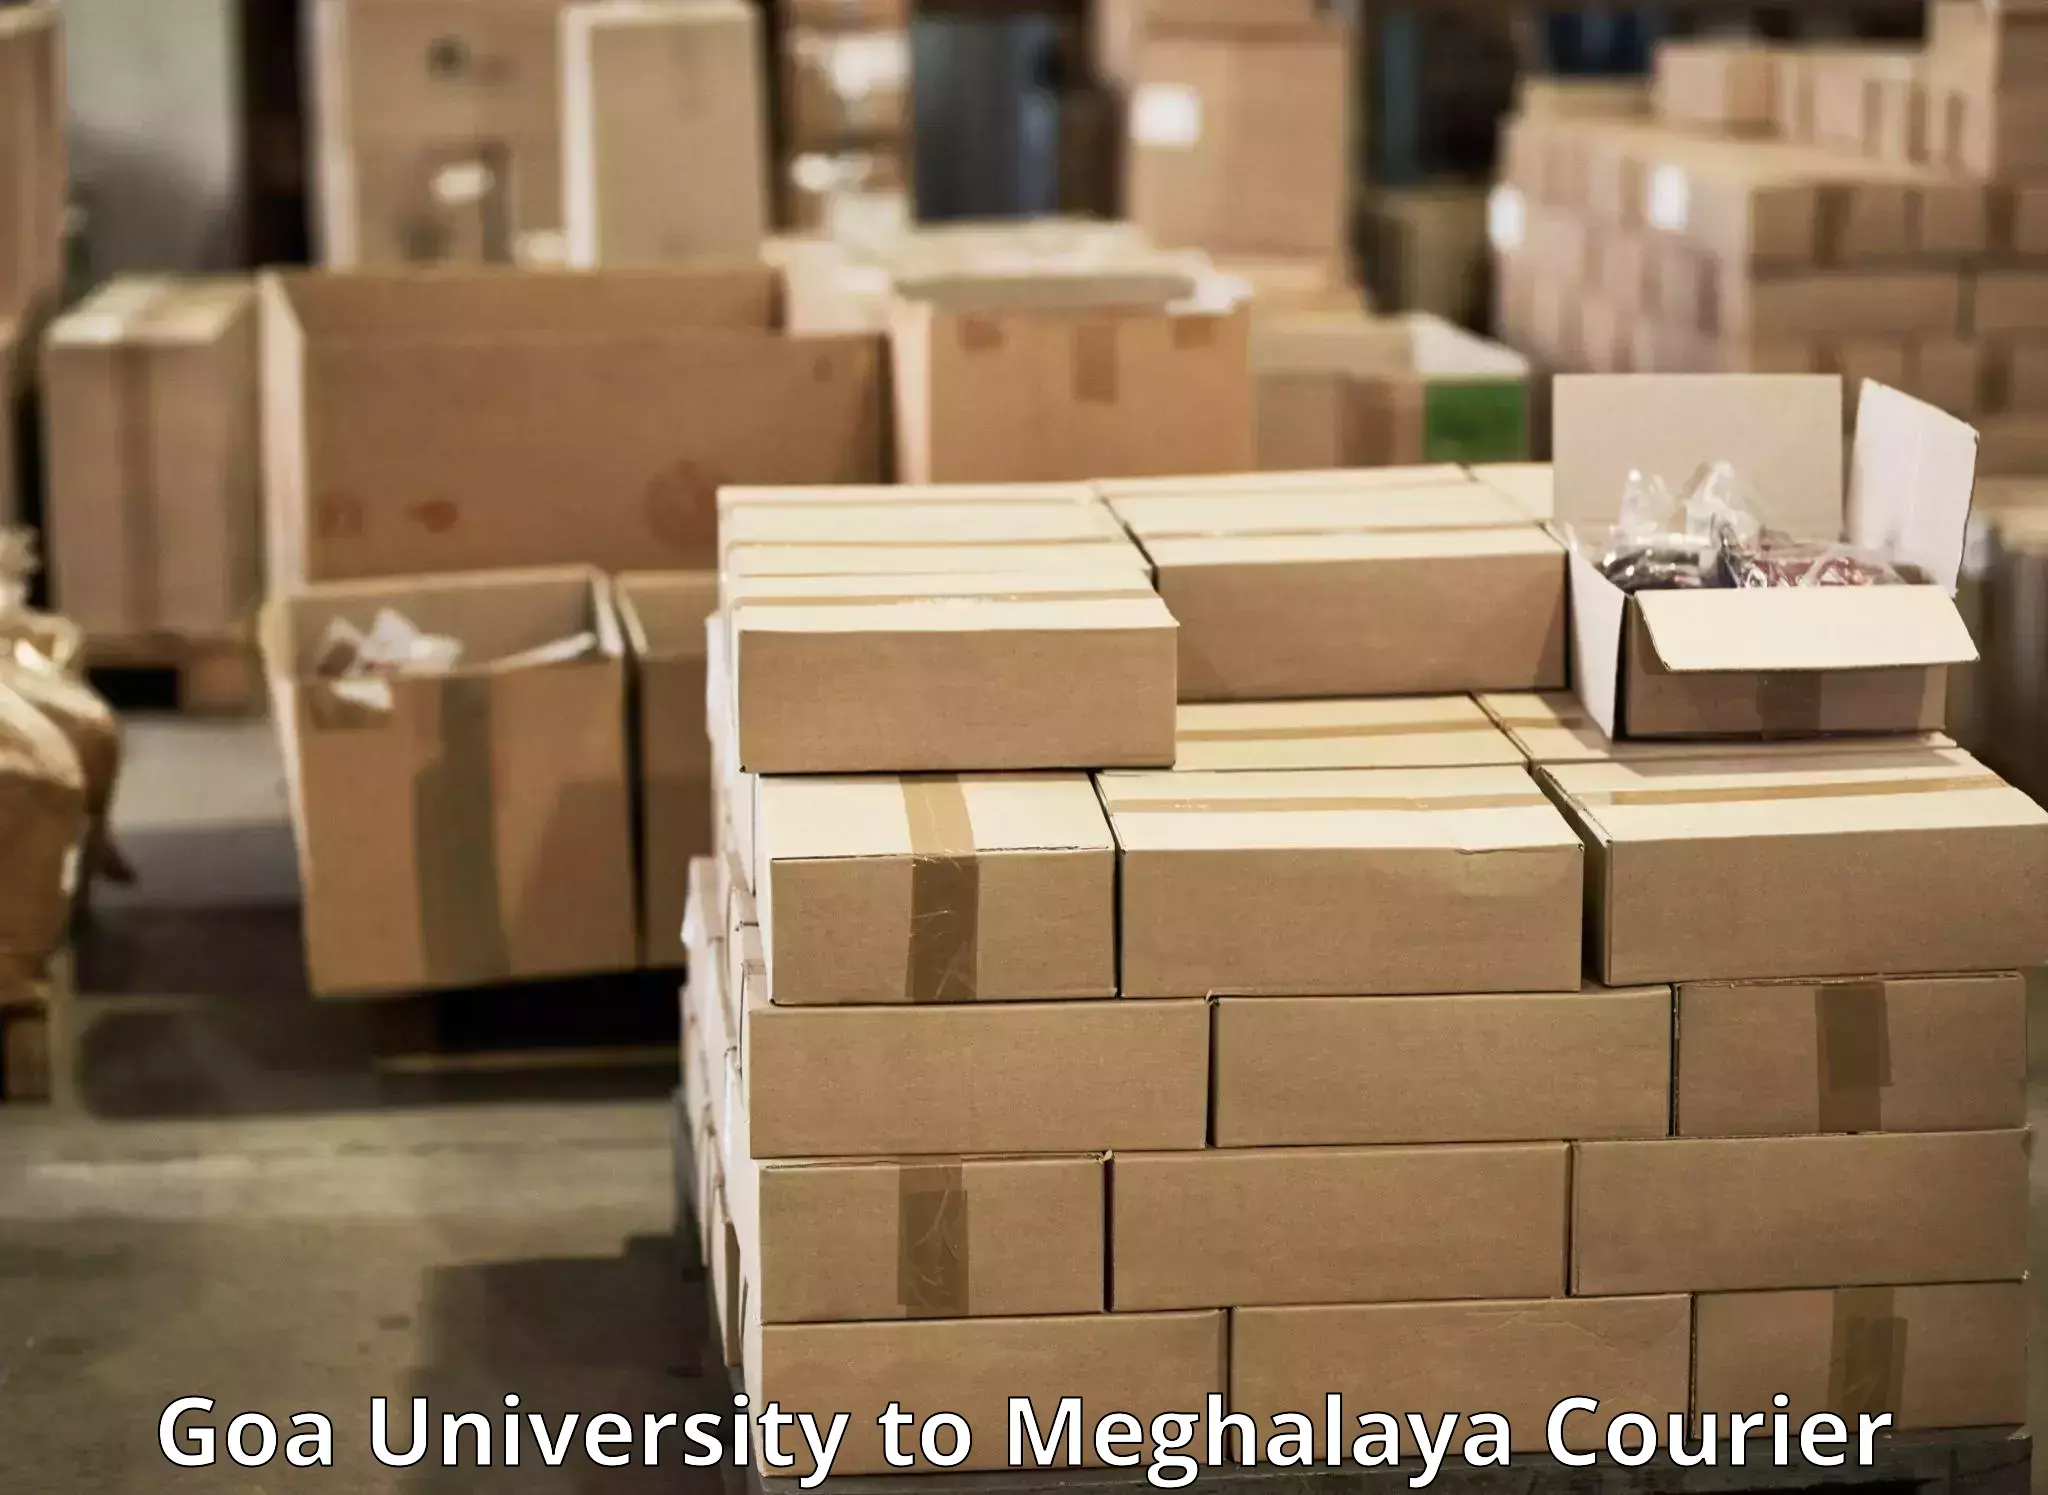 Efficient freight service Goa University to Garobadha